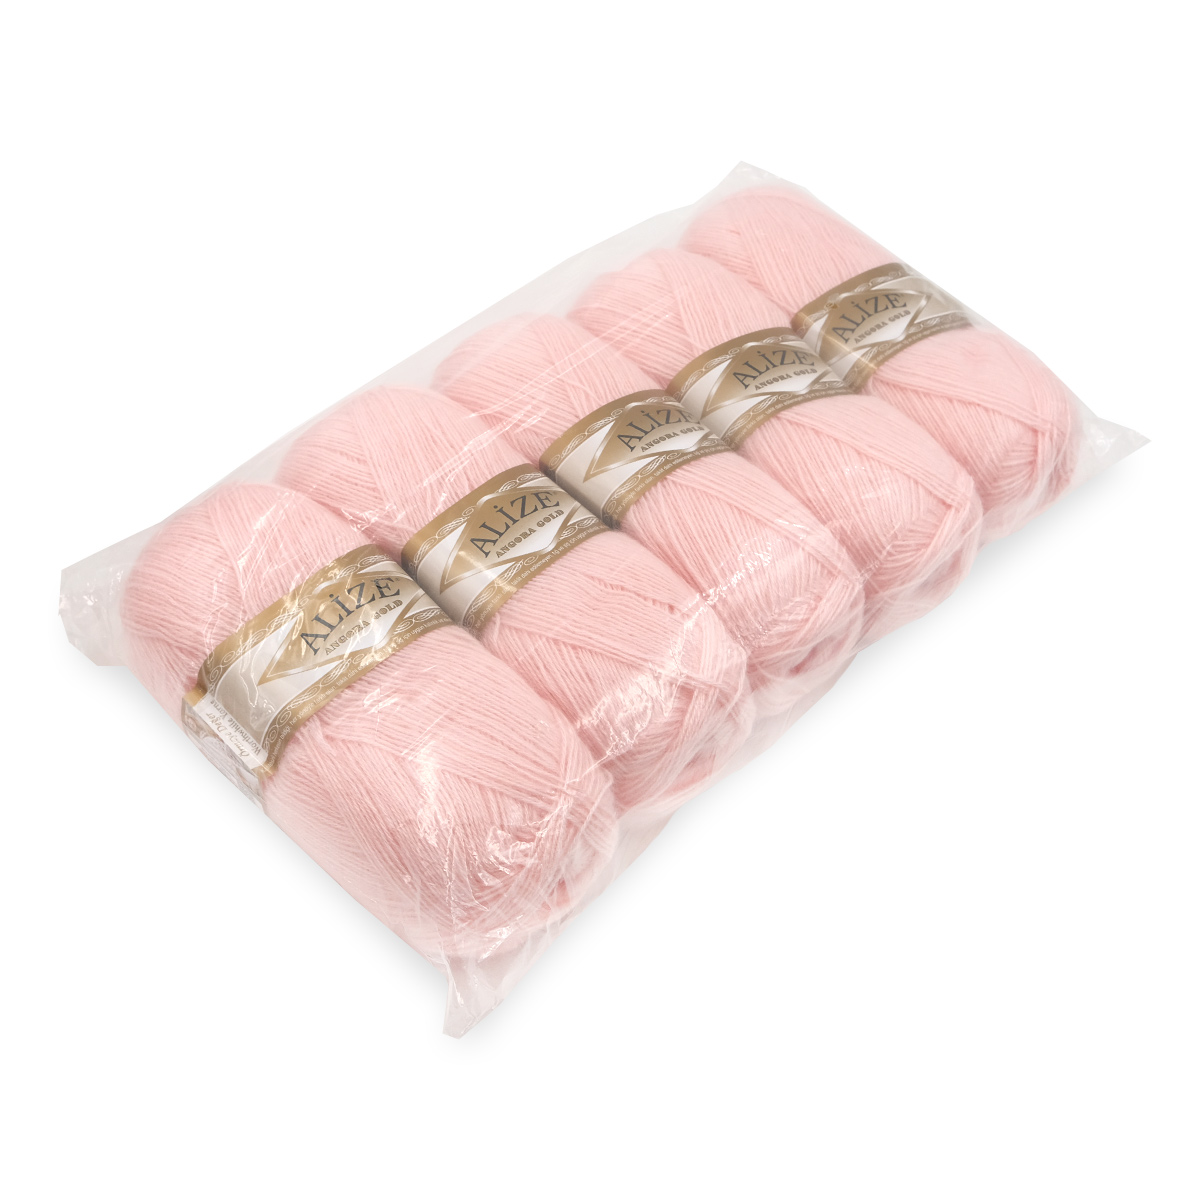 Пряжа Alize мягкая теплая для шарфов кардиганов Angora Gold 100 гр 550 м 5 мотков 271 жемчужно-розовый - фото 8